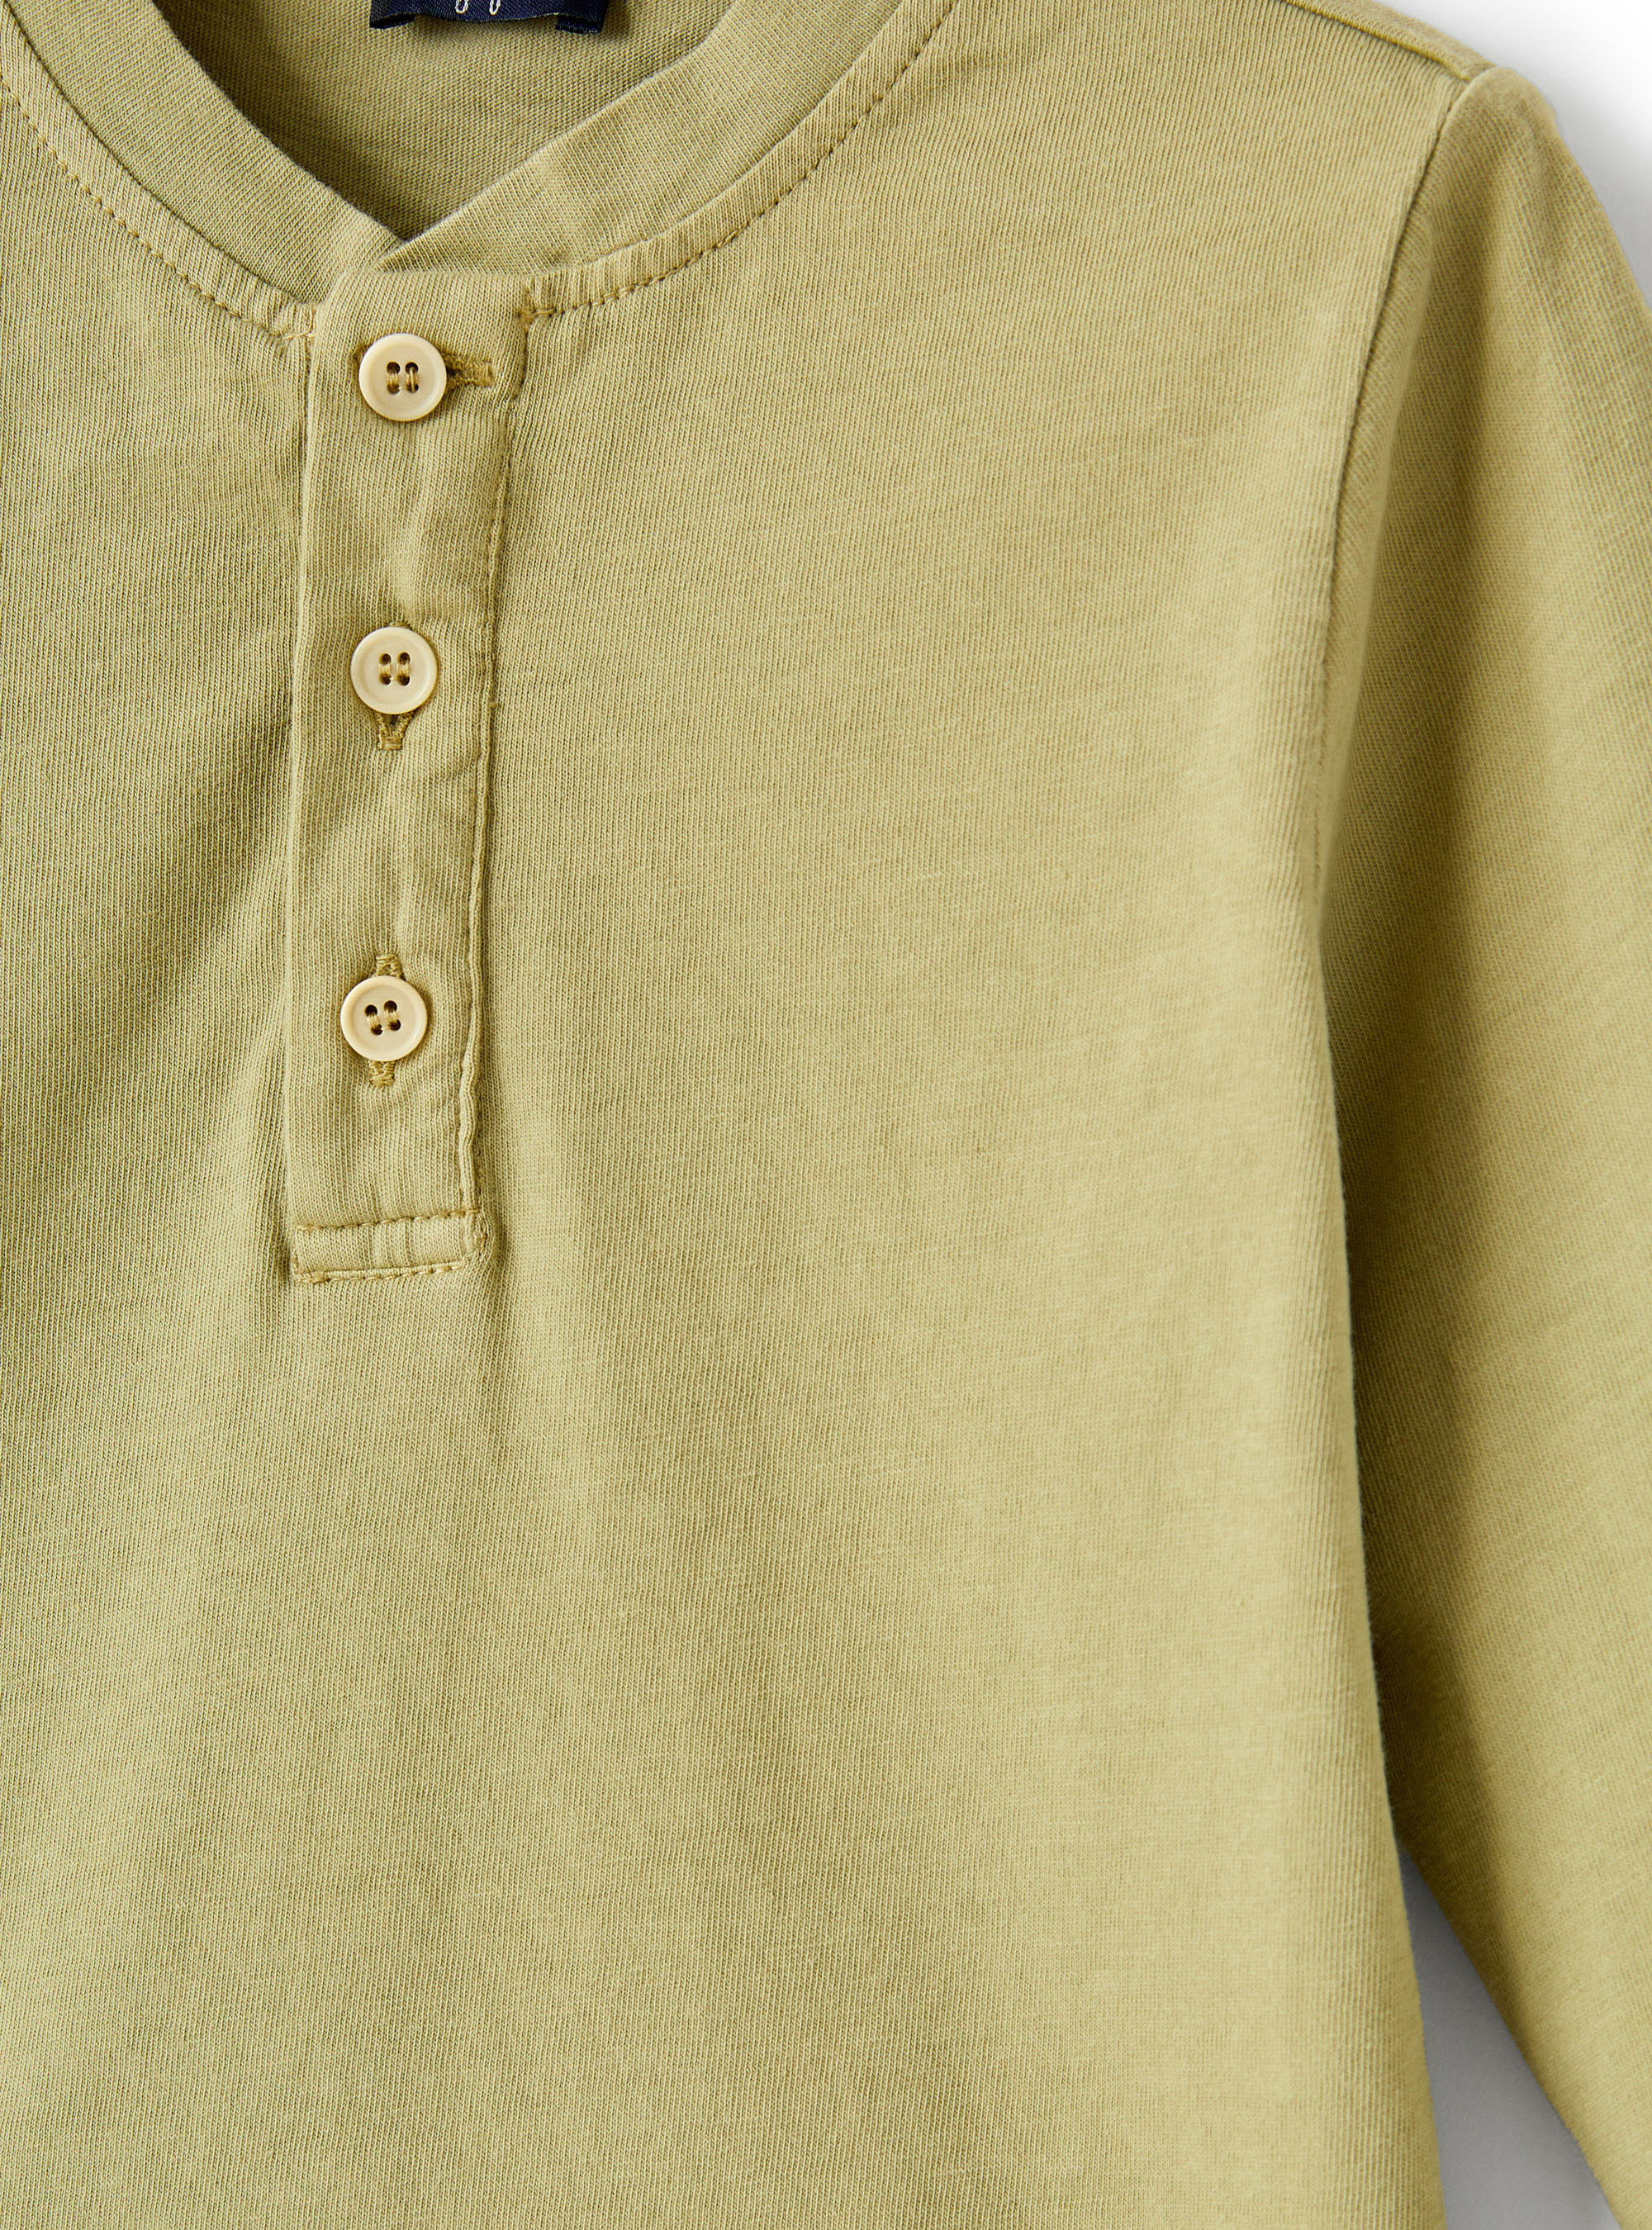 Maglia in jersey organico verde - Verde | Il Gufo